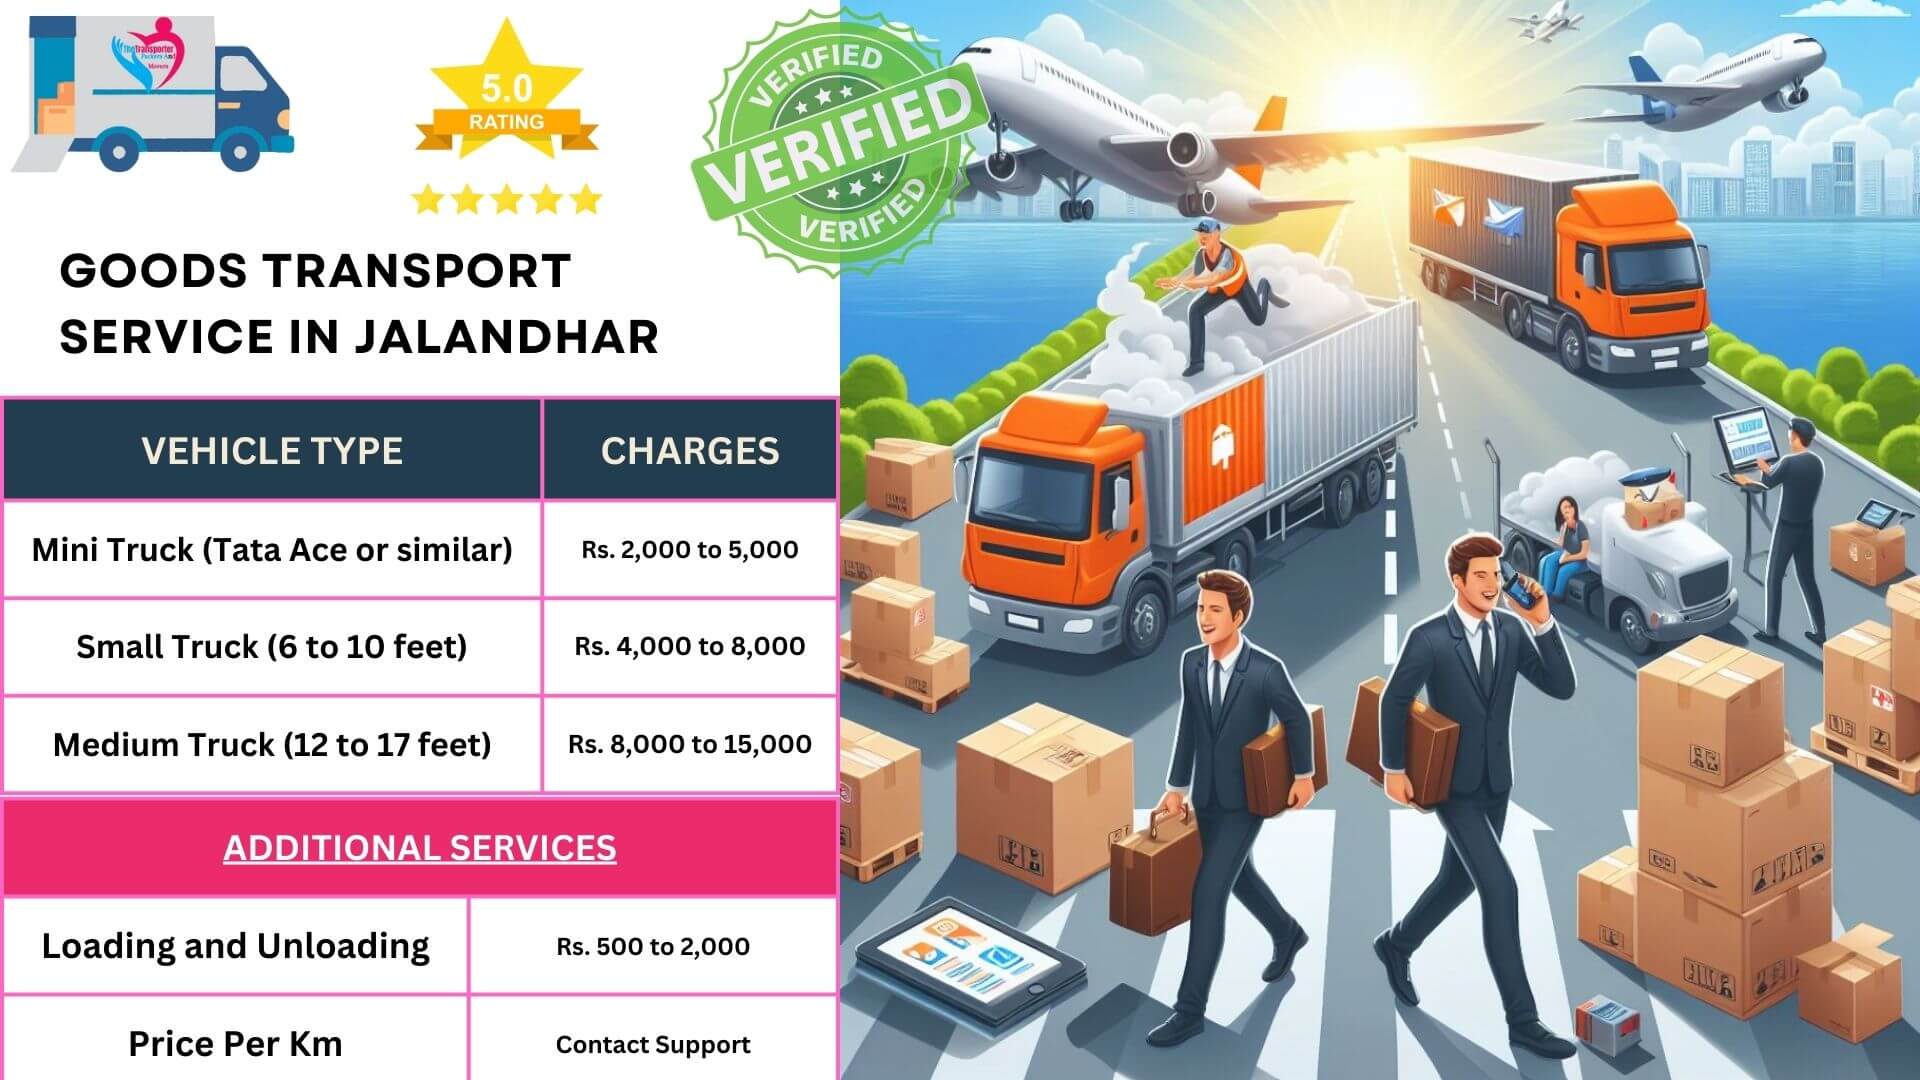 Goods transport services in Jalandhar